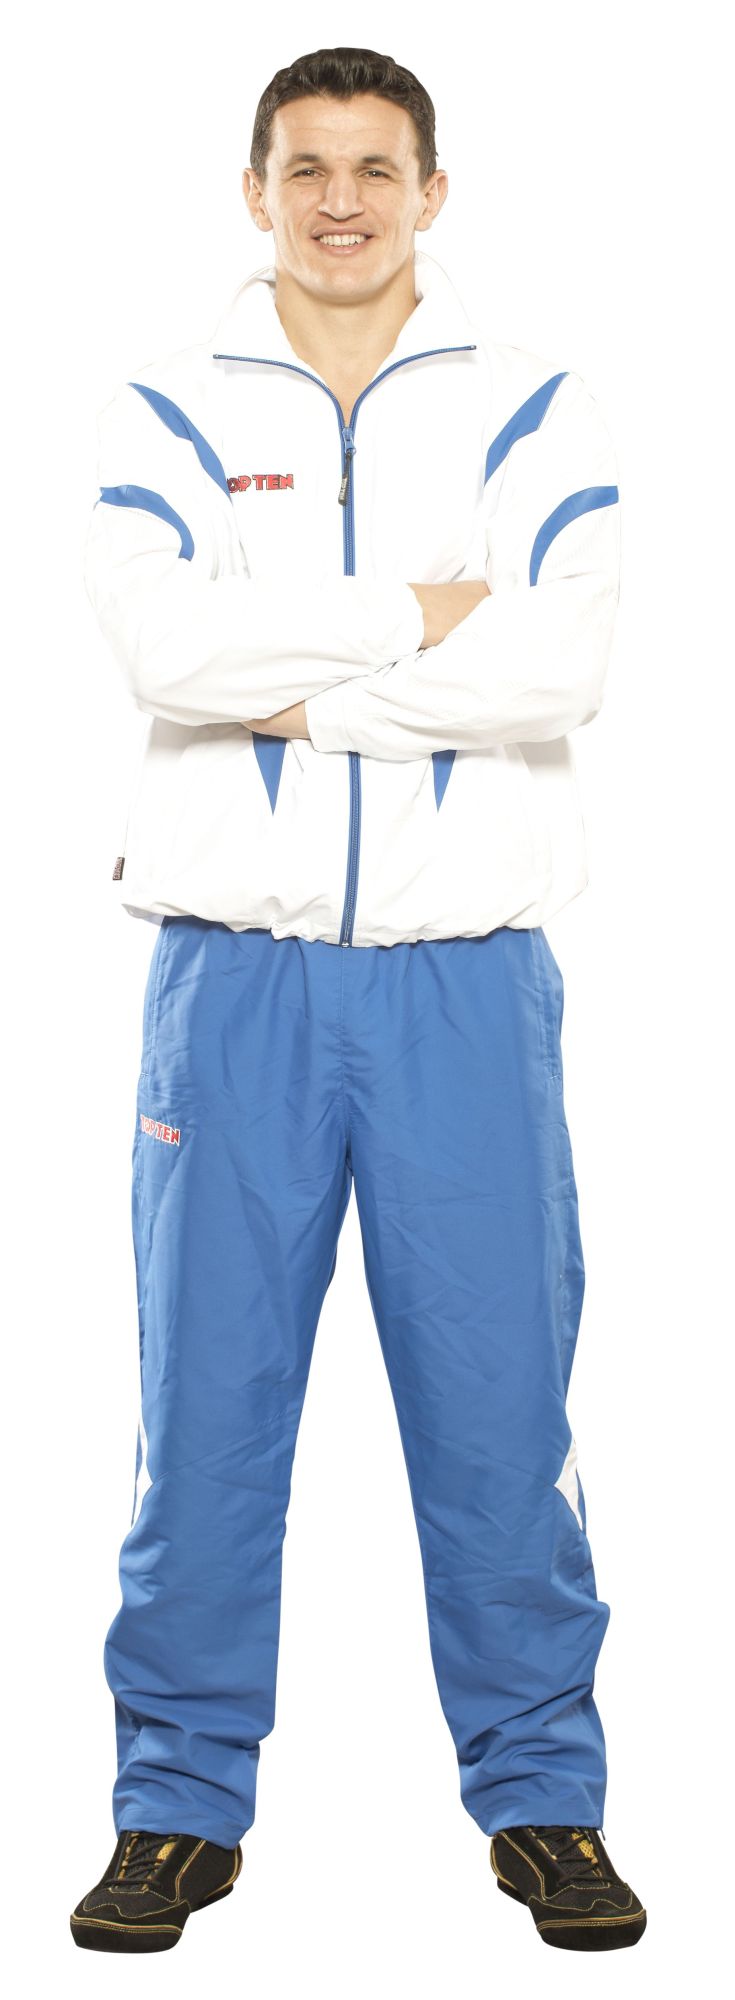 TOP TEN Trainingspak “Premium Quality” met blauw pants voor kinderen Wit - Blauw